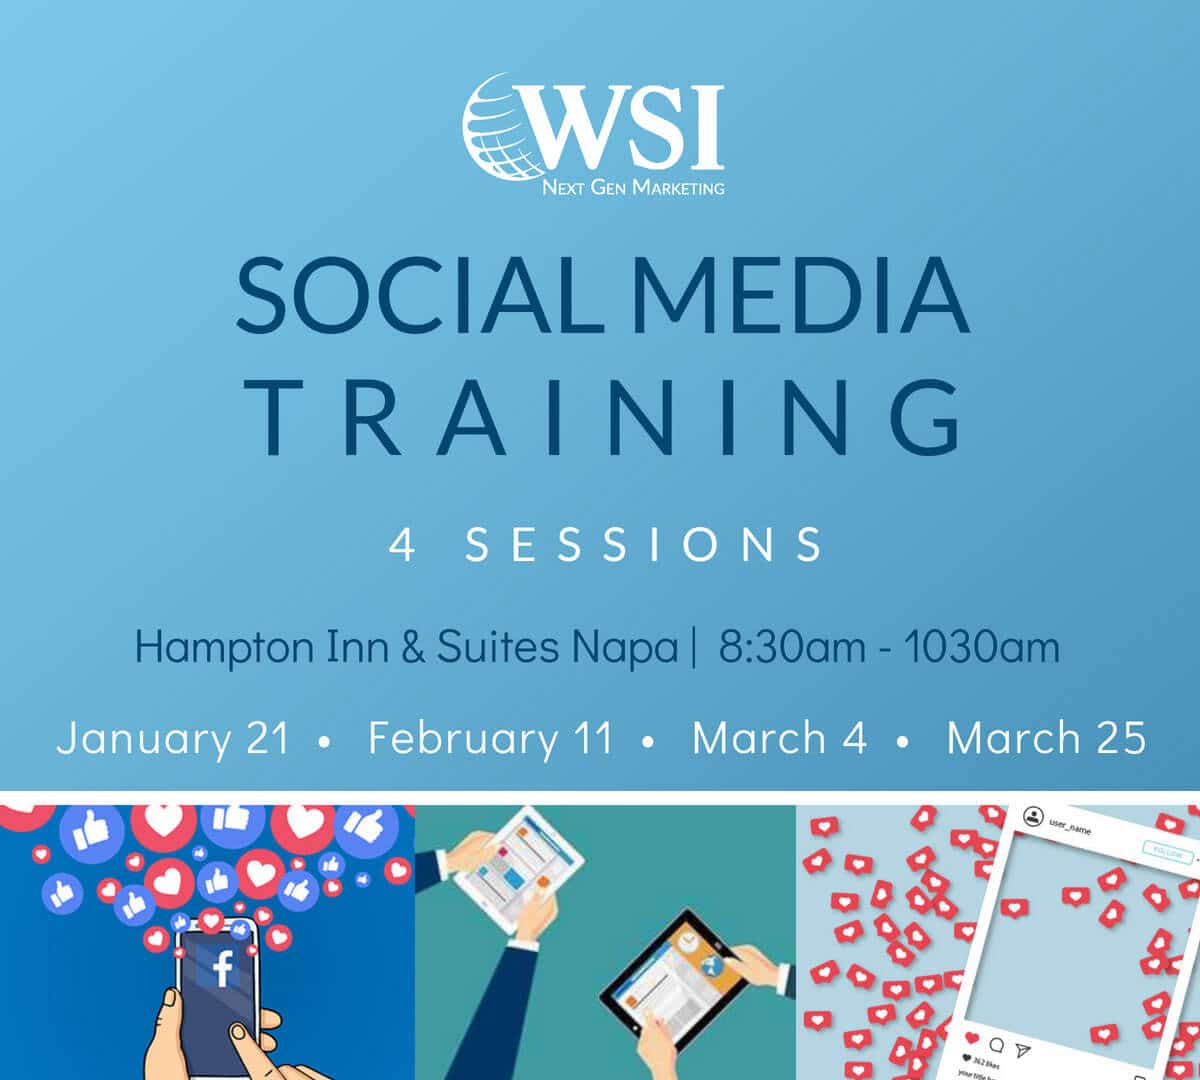 Social Media Training